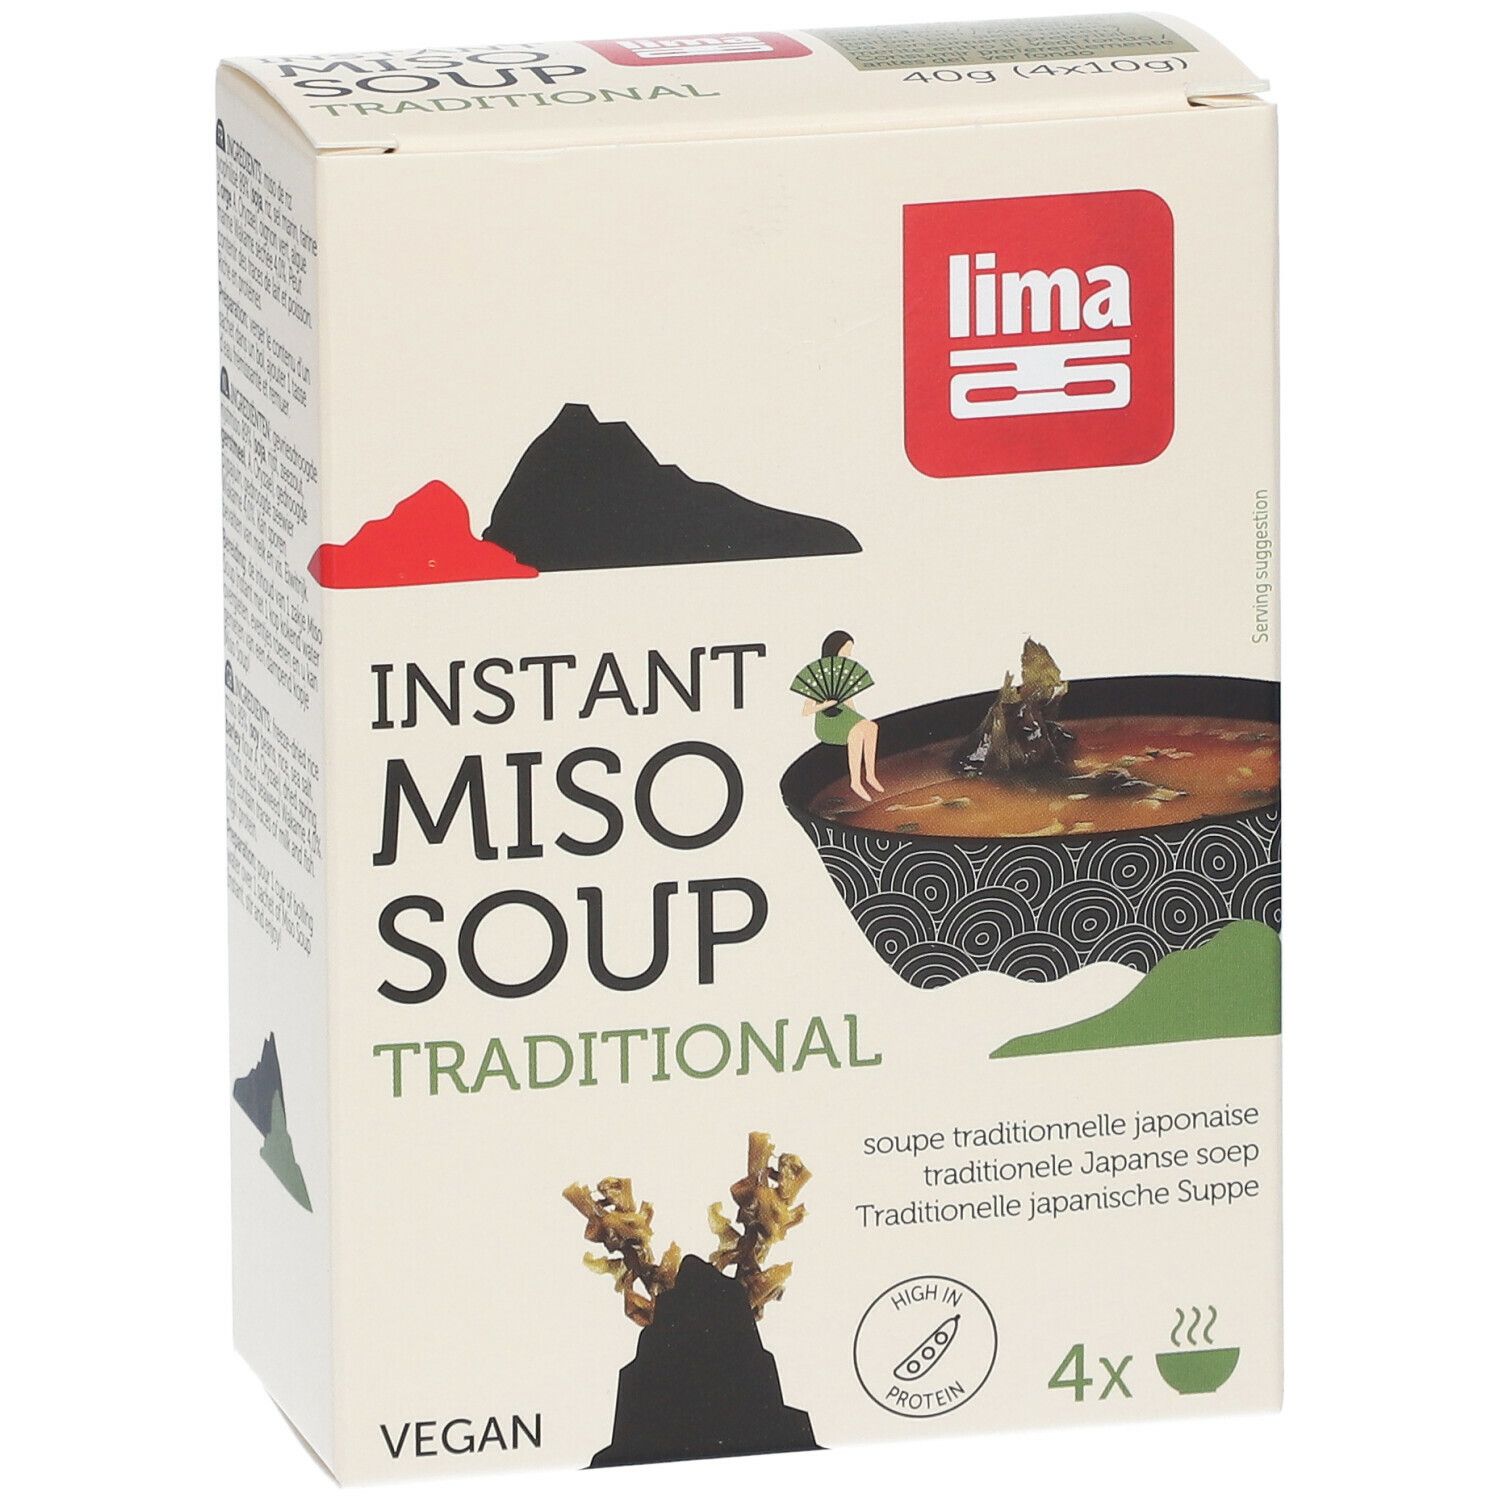 Lima Instant Miso Soupe